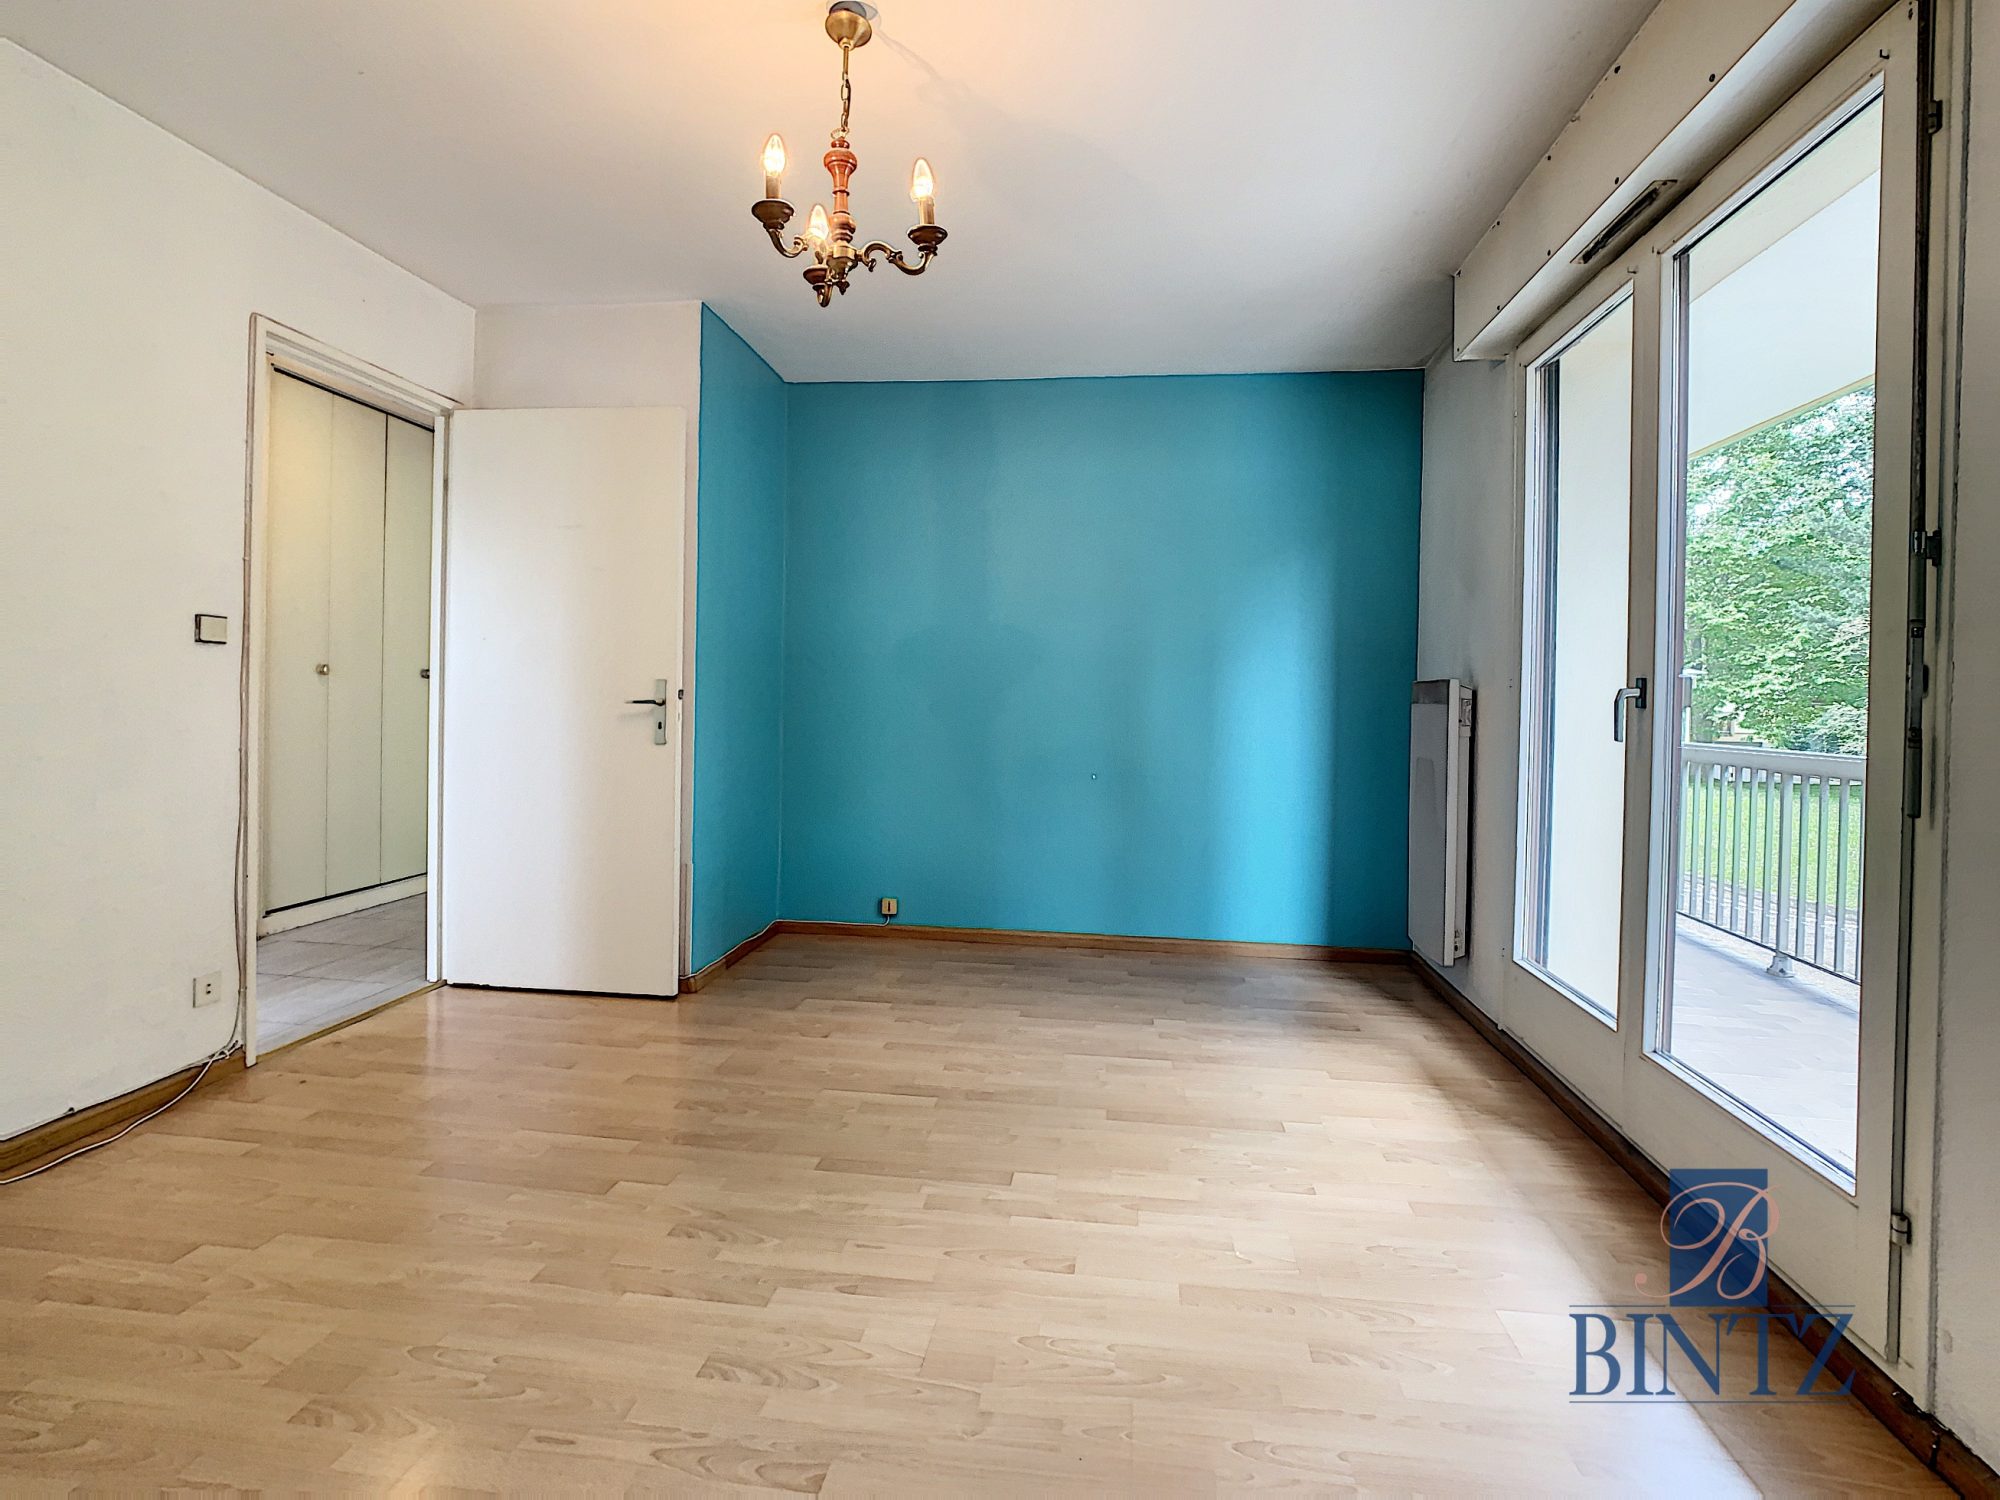 Appartement traversant 4 pièces 97,5m2 à Oberhausbergen - vente immobilière - Bintz Immobilier - 7